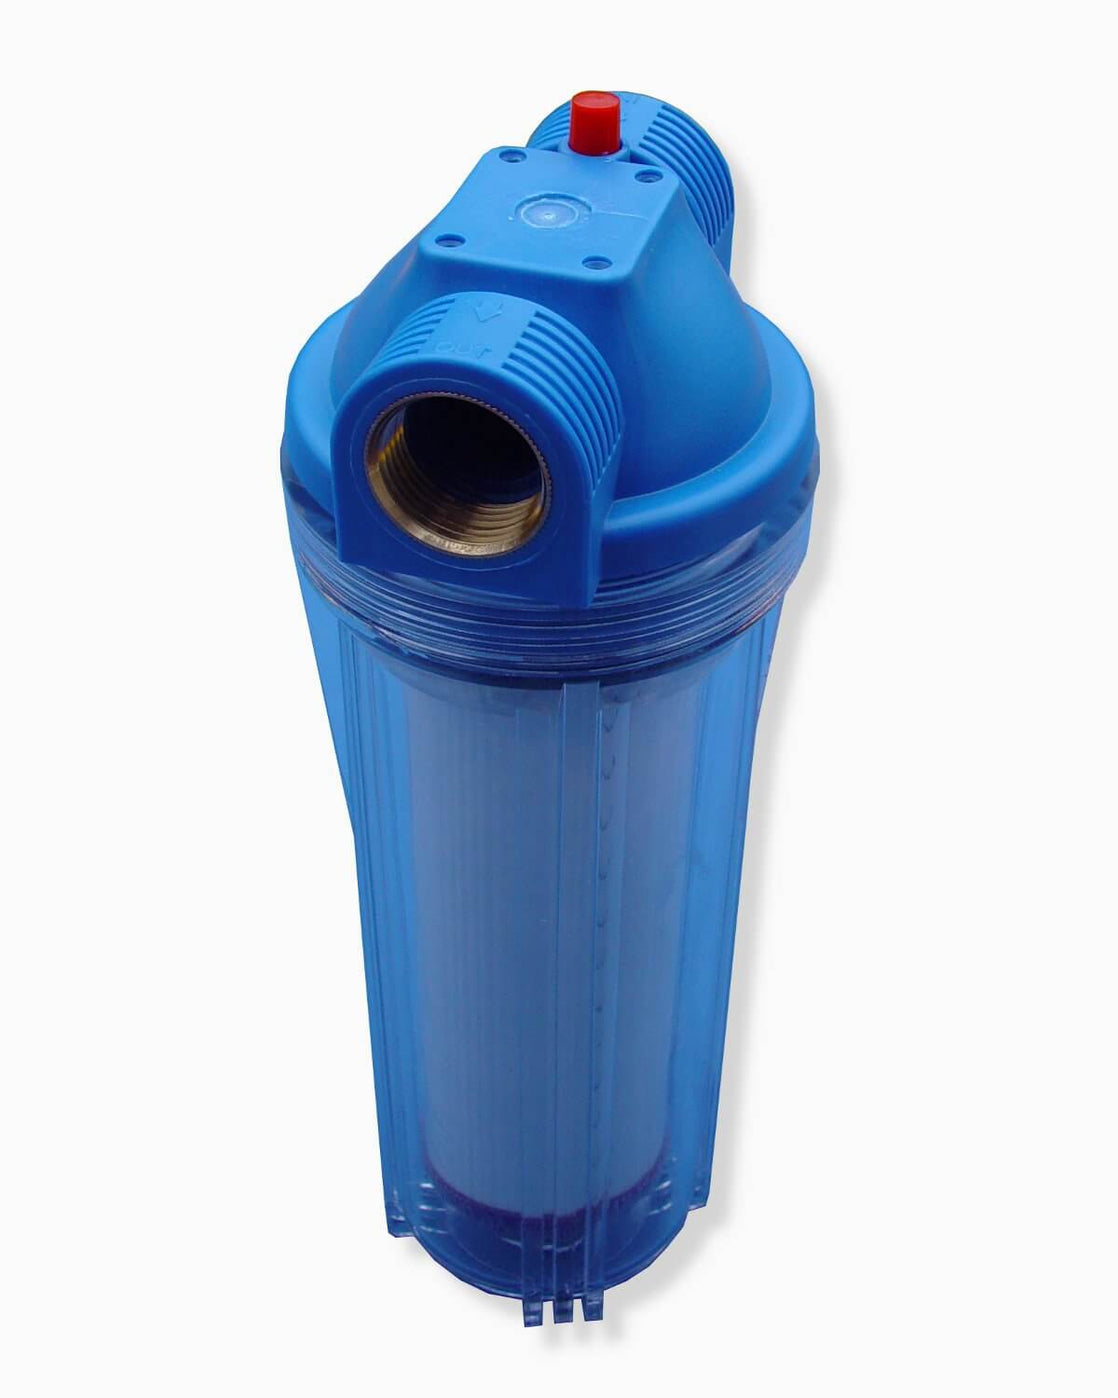 Ein blauer PURION Vorfilter Enteisung-Wasserfilter auf weißem Hintergrund, der Enteisung und Trinkwasser für sauberes Trinkwasser bietet. (Markenname: PURION GmbH)